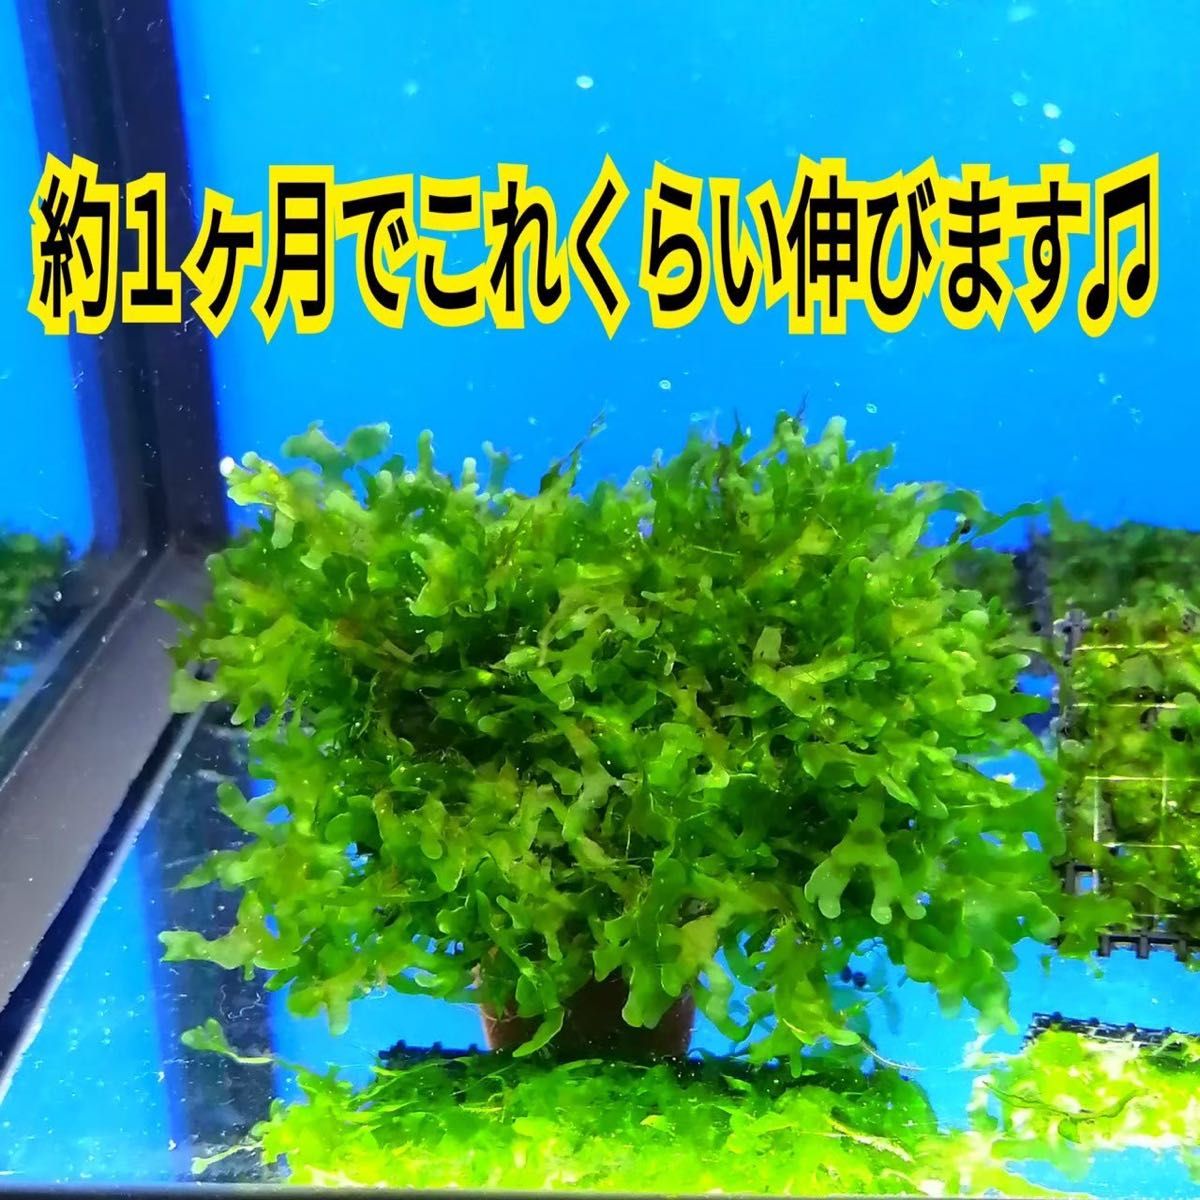 6枚 モスファン ゼニゴケ マット 無農薬 ミナミヌマエビ 水草 隠れ家 メダカ グッピー アクアリウム 水槽 レイアウト 模型